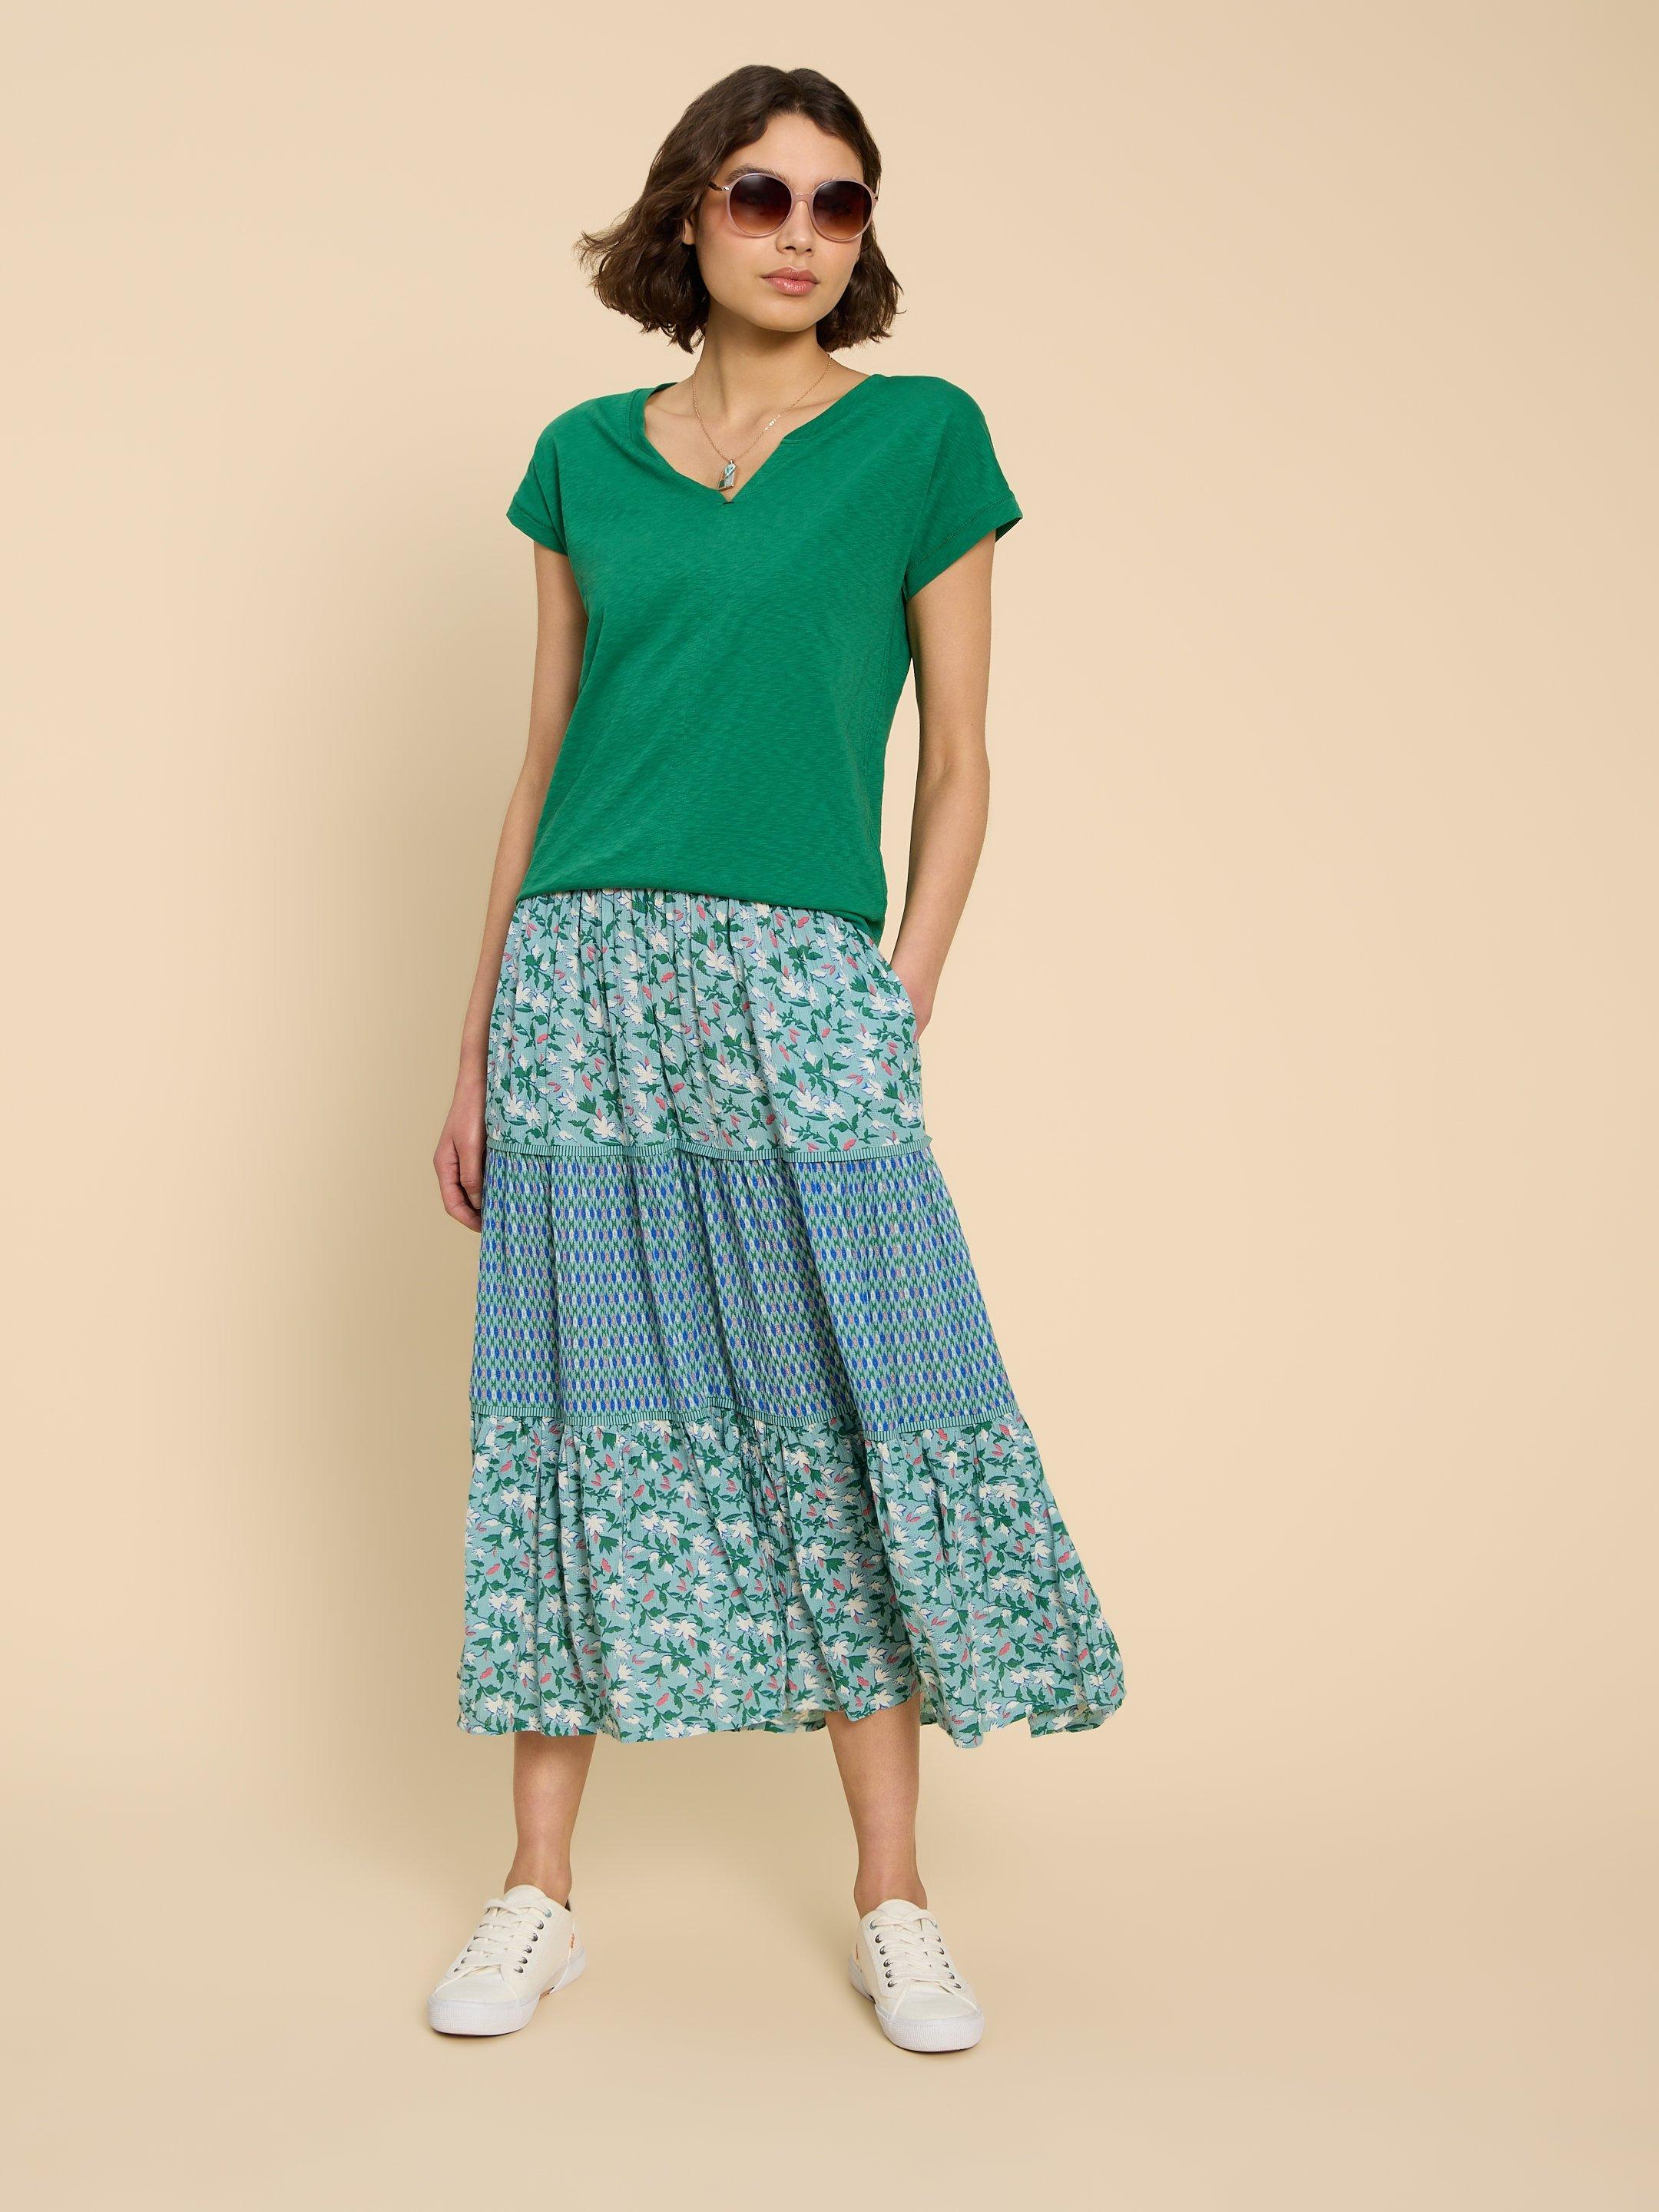 Mabel Mixed Print Skirt